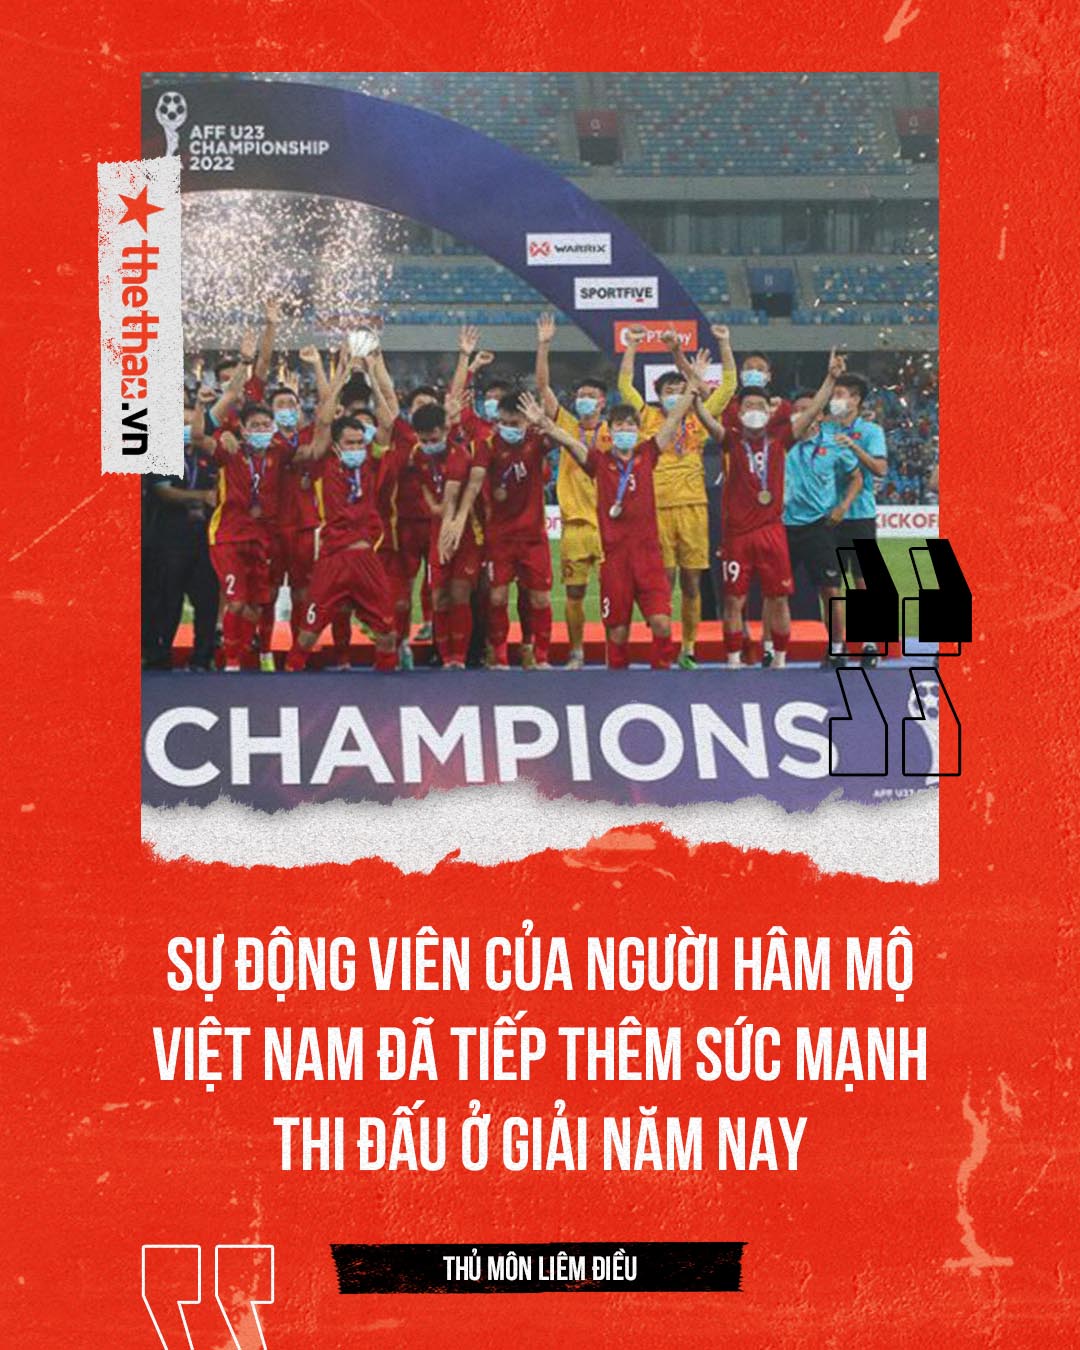 Thủ môn Liêm Điều: Mơ ghi bàn cho U23 Việt Nam, lấy vợ sớm vì đúng ngày tốt - Ảnh 4